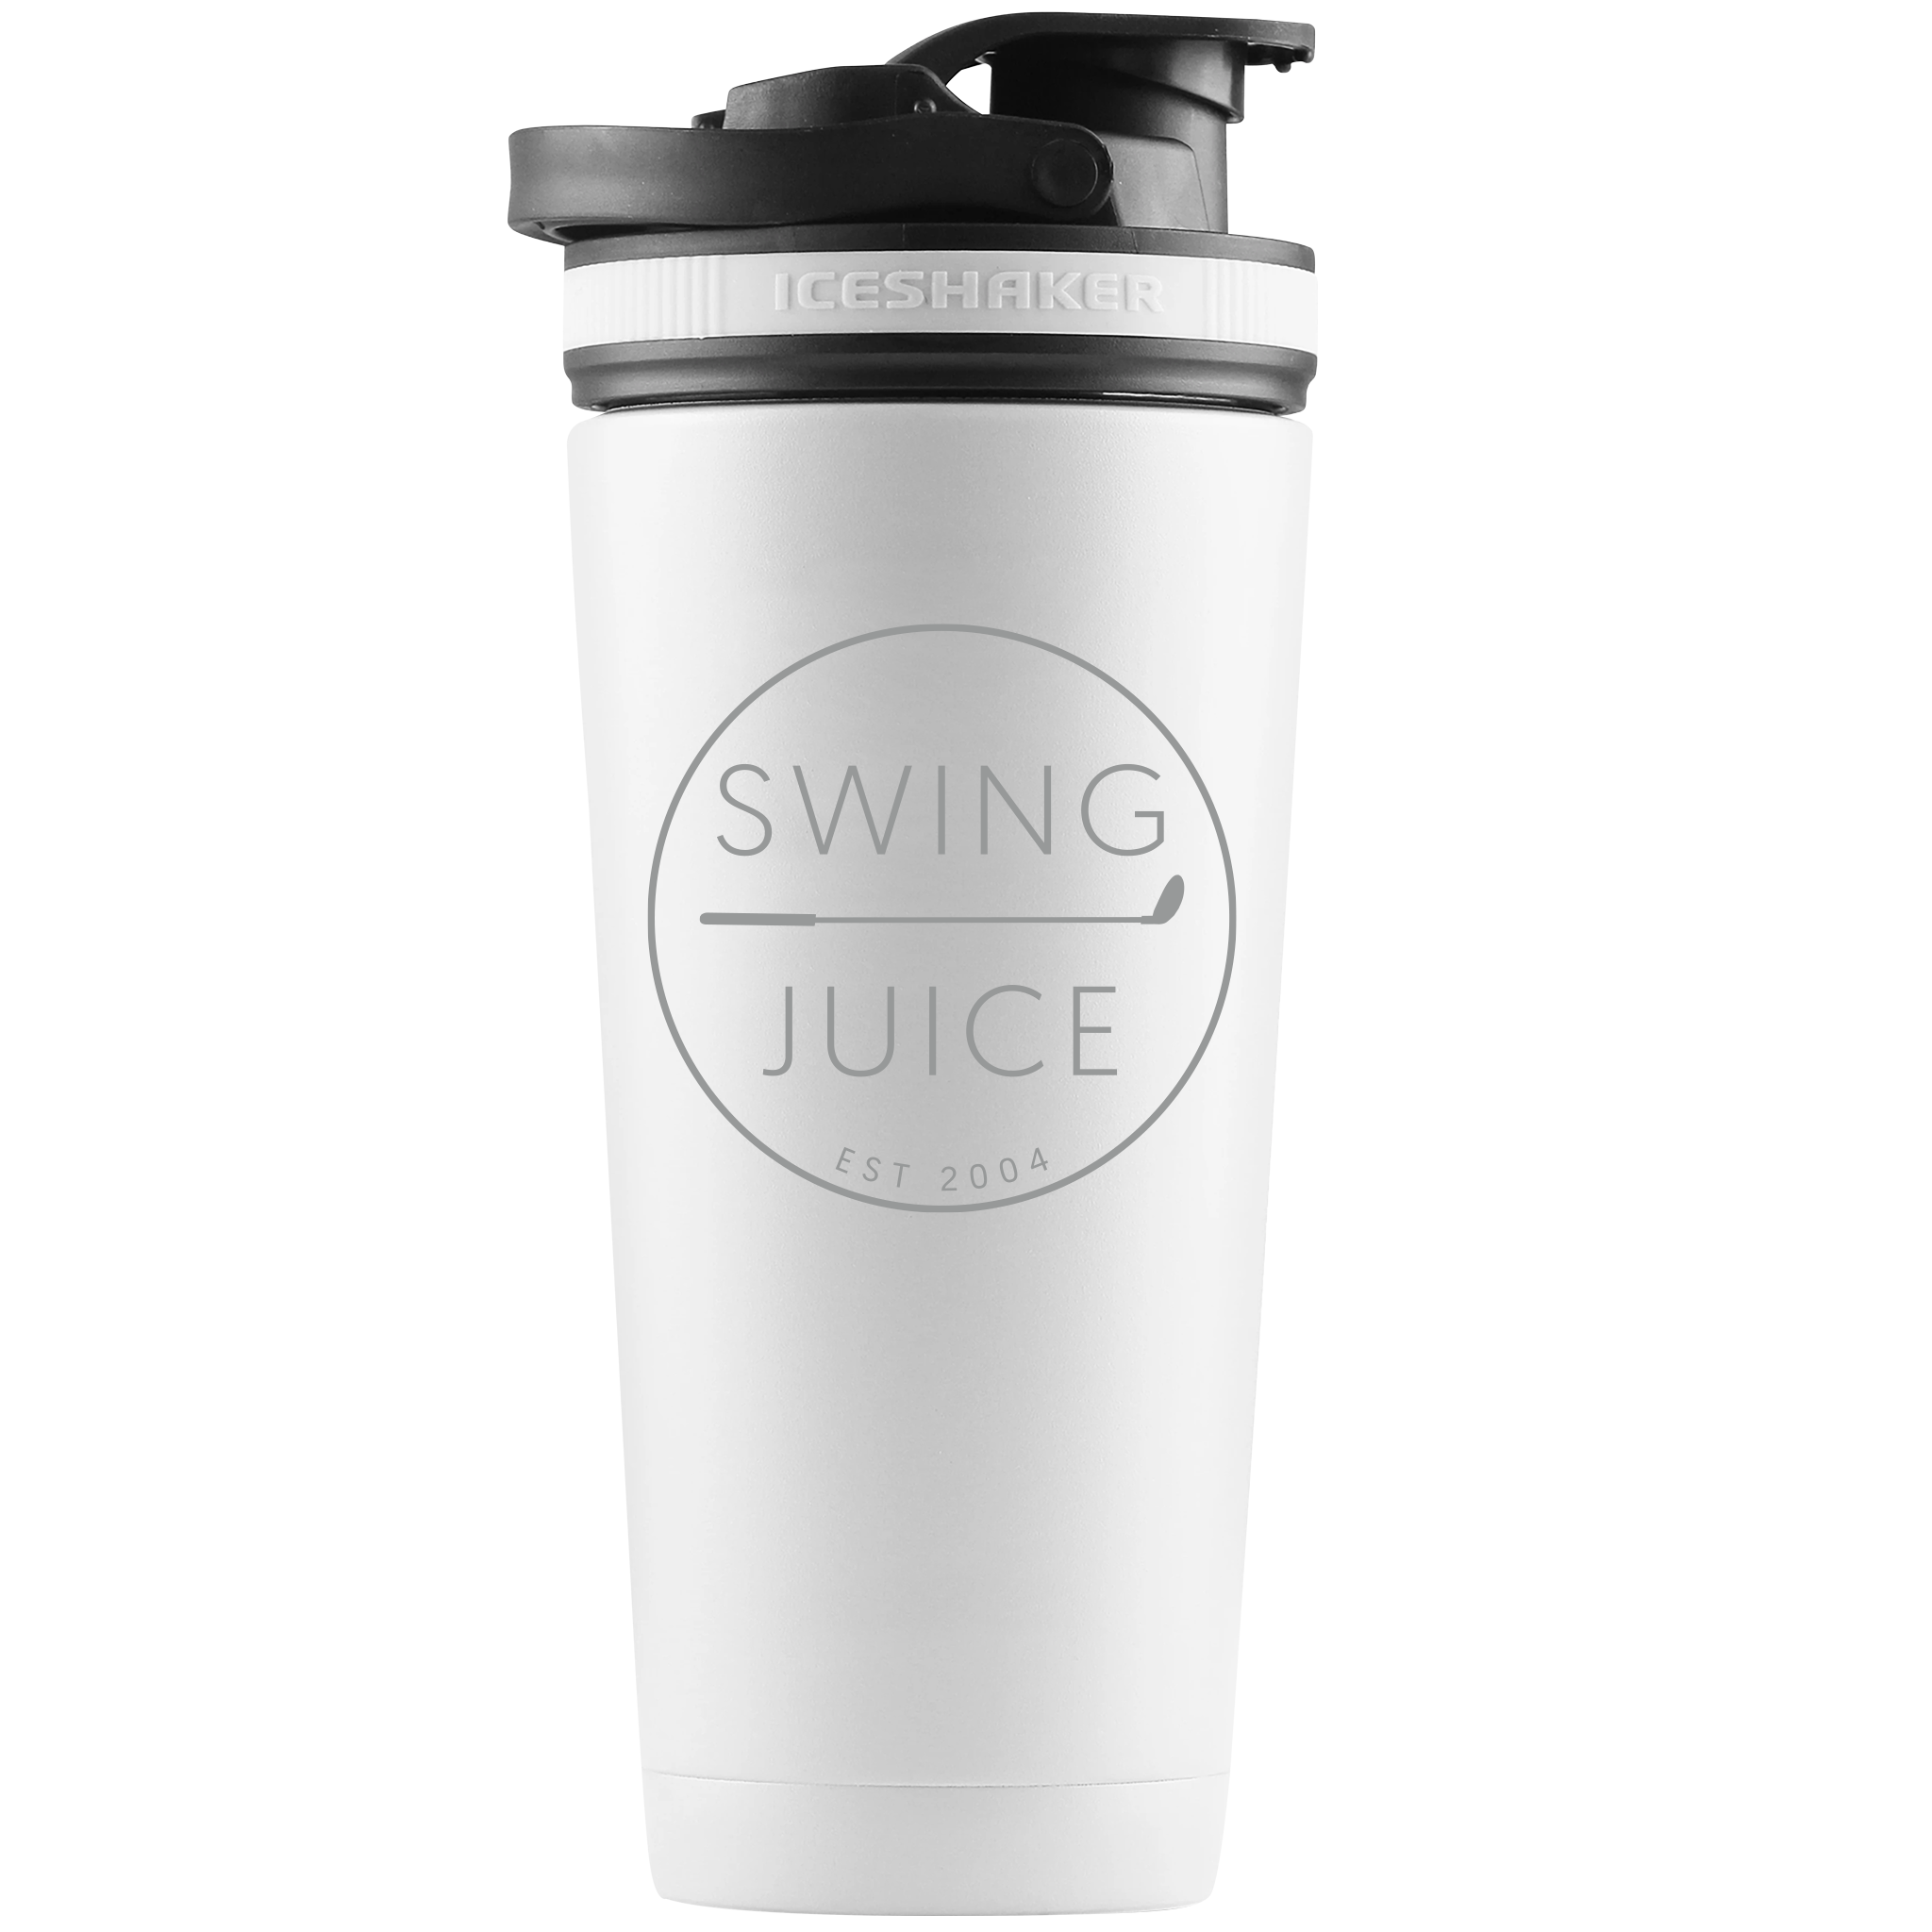 https://swingjuice.com/cdn/shop/files/swingjuice-golf-retro-ice-shaker-bottle-white.png?v=1695999026